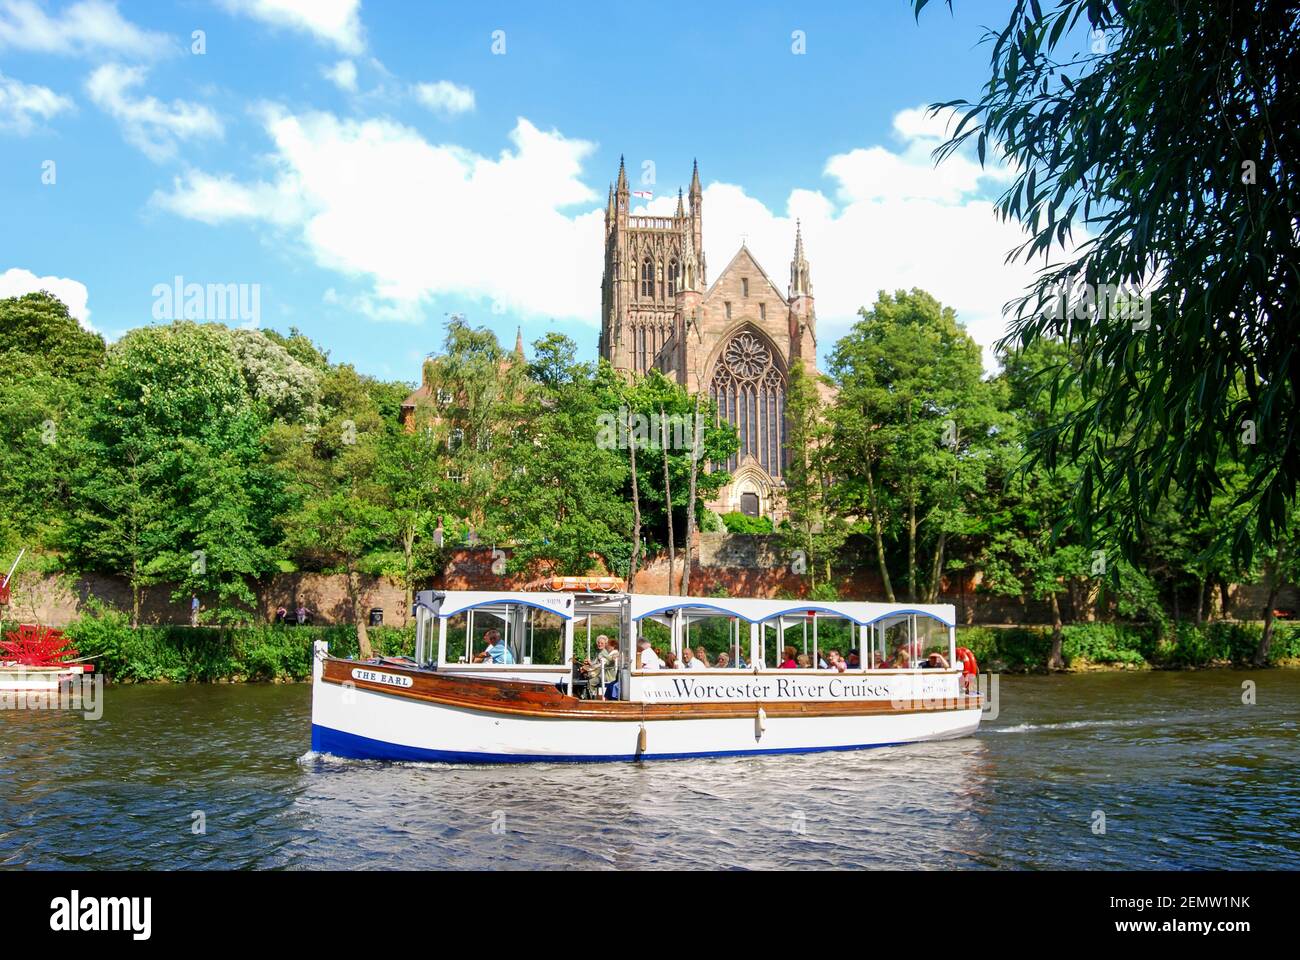 Cathédrale de Worcester et bateau de croisière sur la rivière Severn, Worcester, Worcestershire, Angleterre, Royaume-Uni Banque D'Images